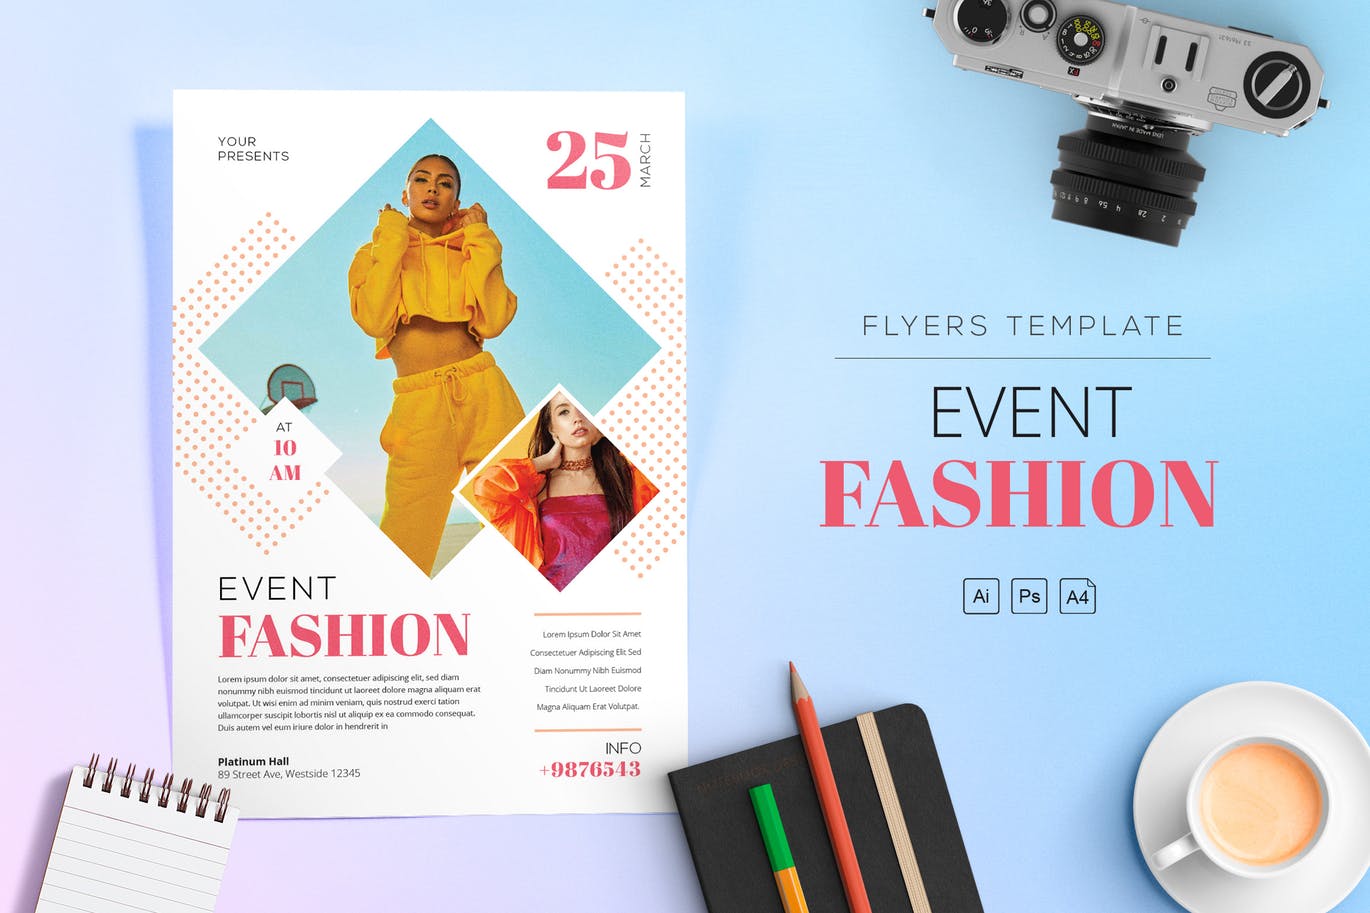 时尚主题活动海报传单设计模板 Event Fashion Flyers插图